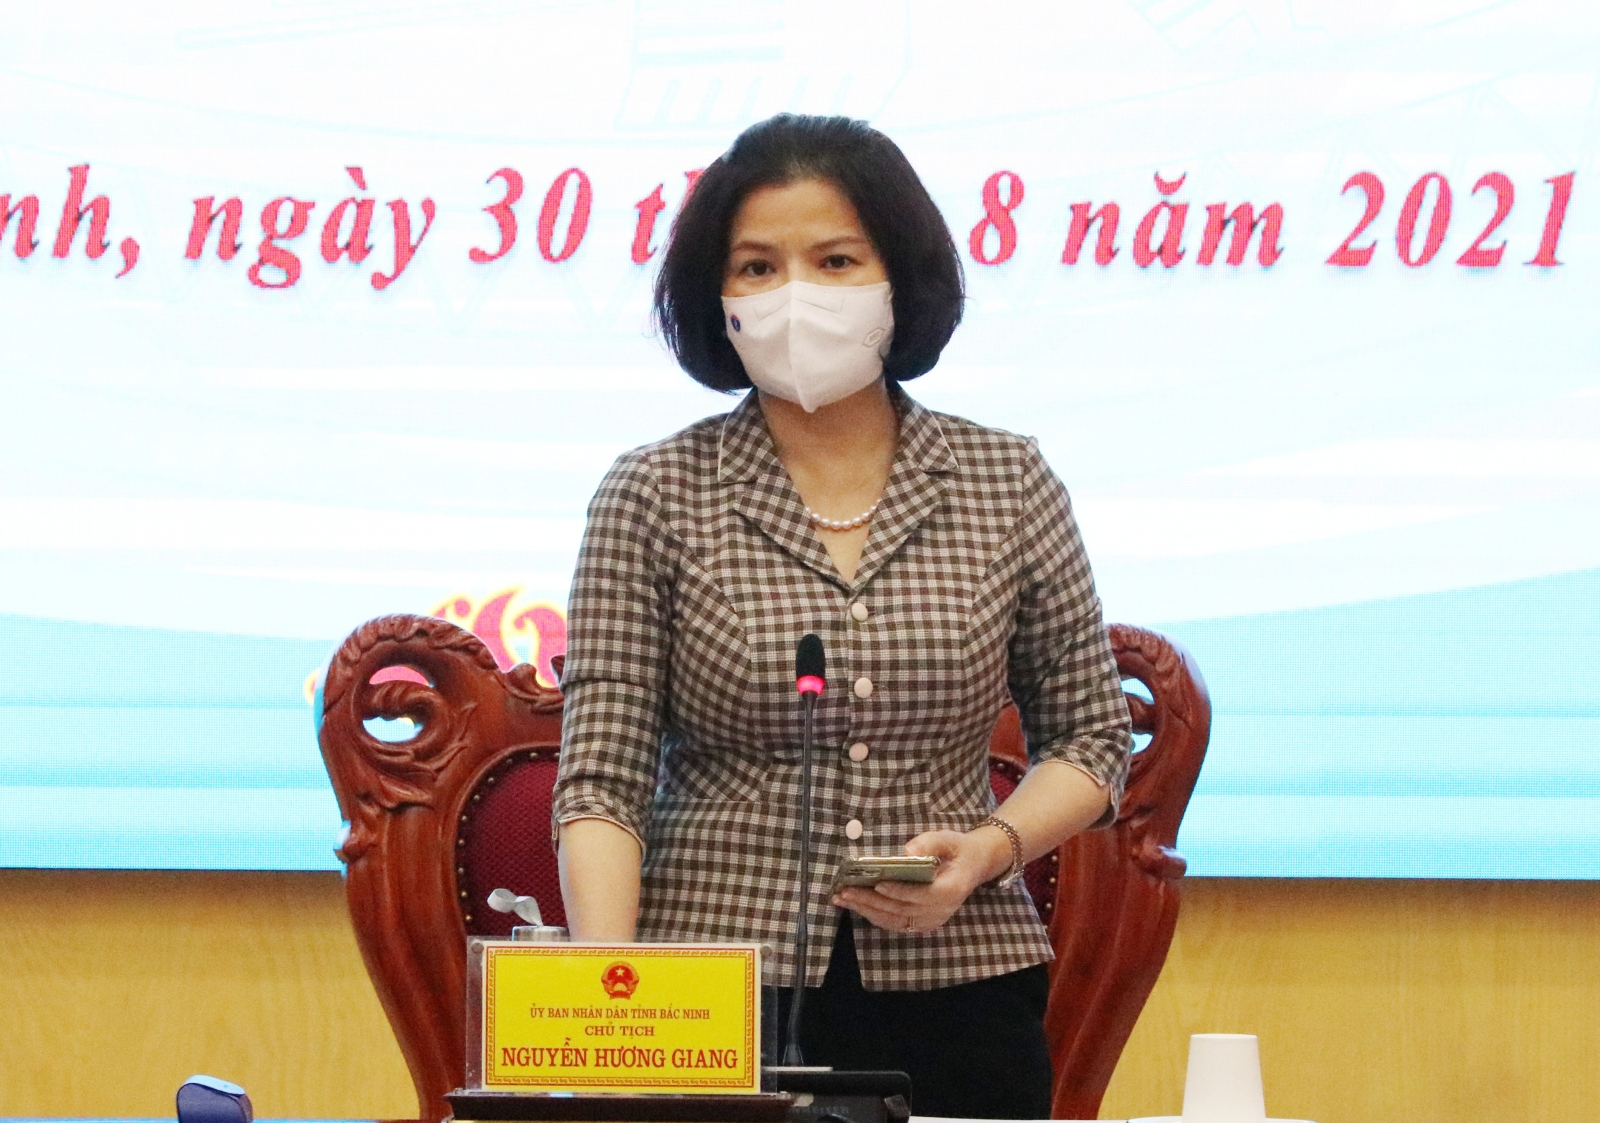 Bắc Ninh chủ động triển khai năm học linh hoạt, phù hợp với tình hình dịch bệnh